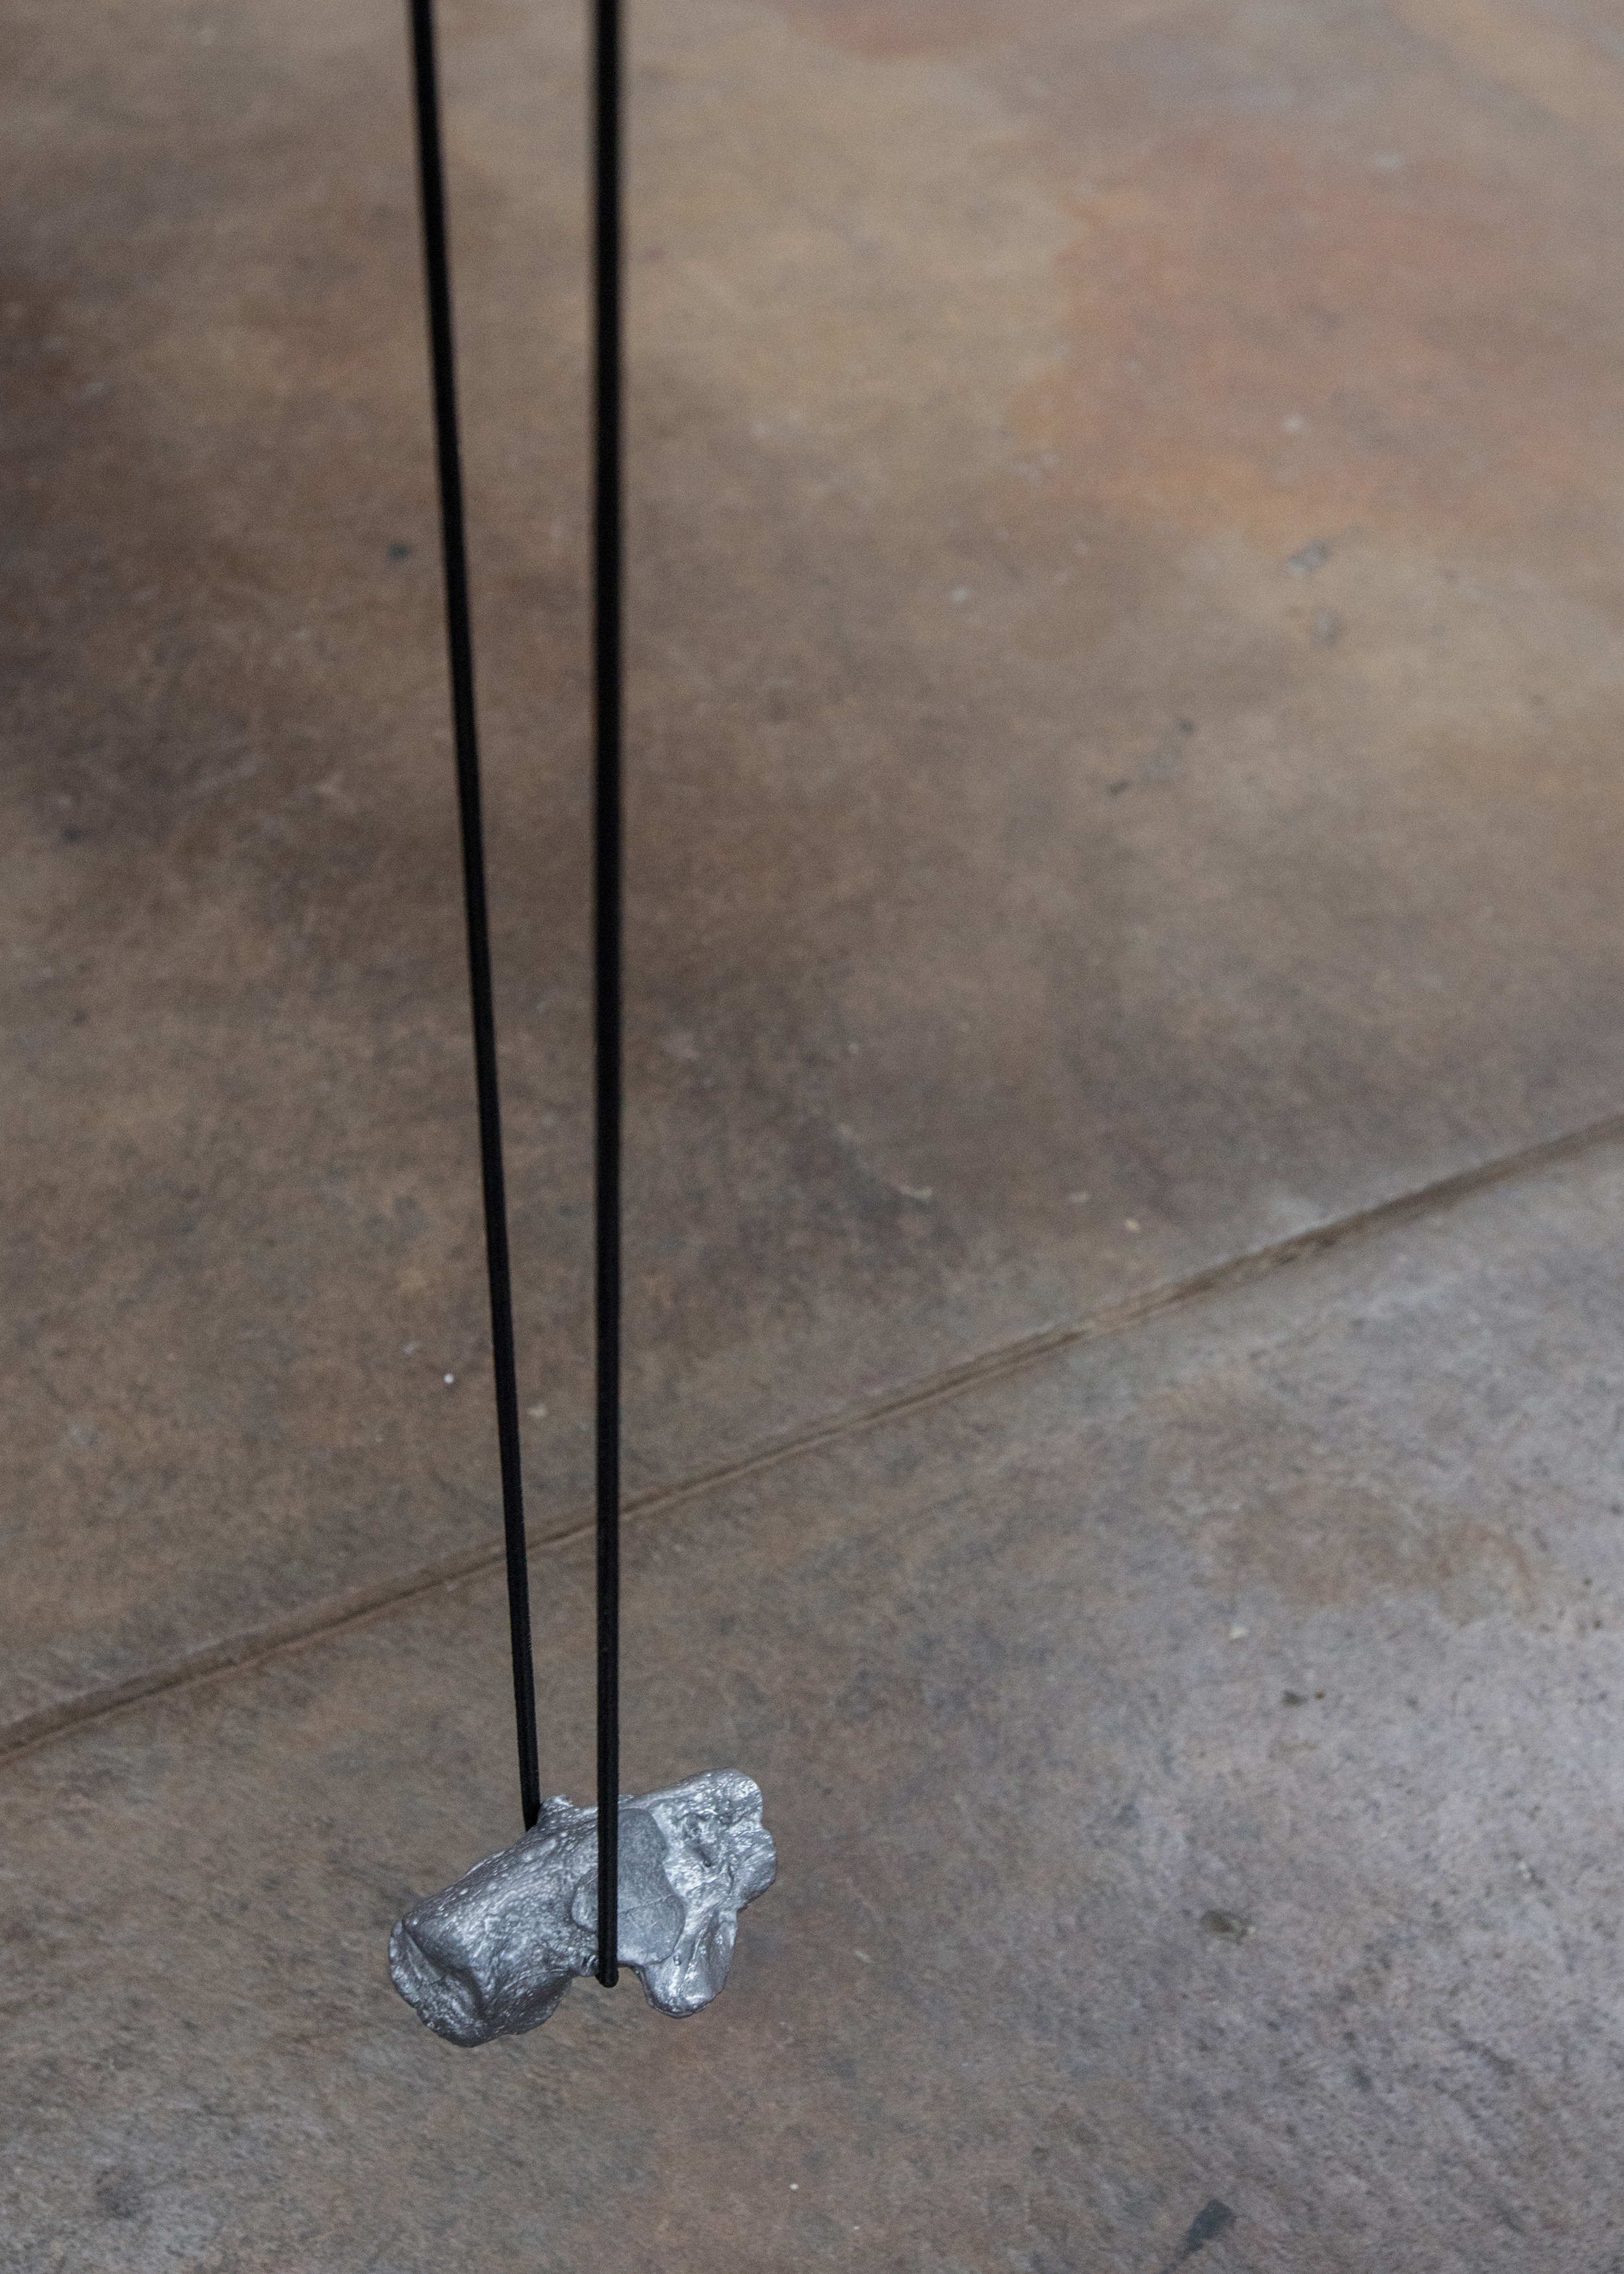  Lauren McKeon,  Extension cord , 2019, lead cast heel bone, shock cord 